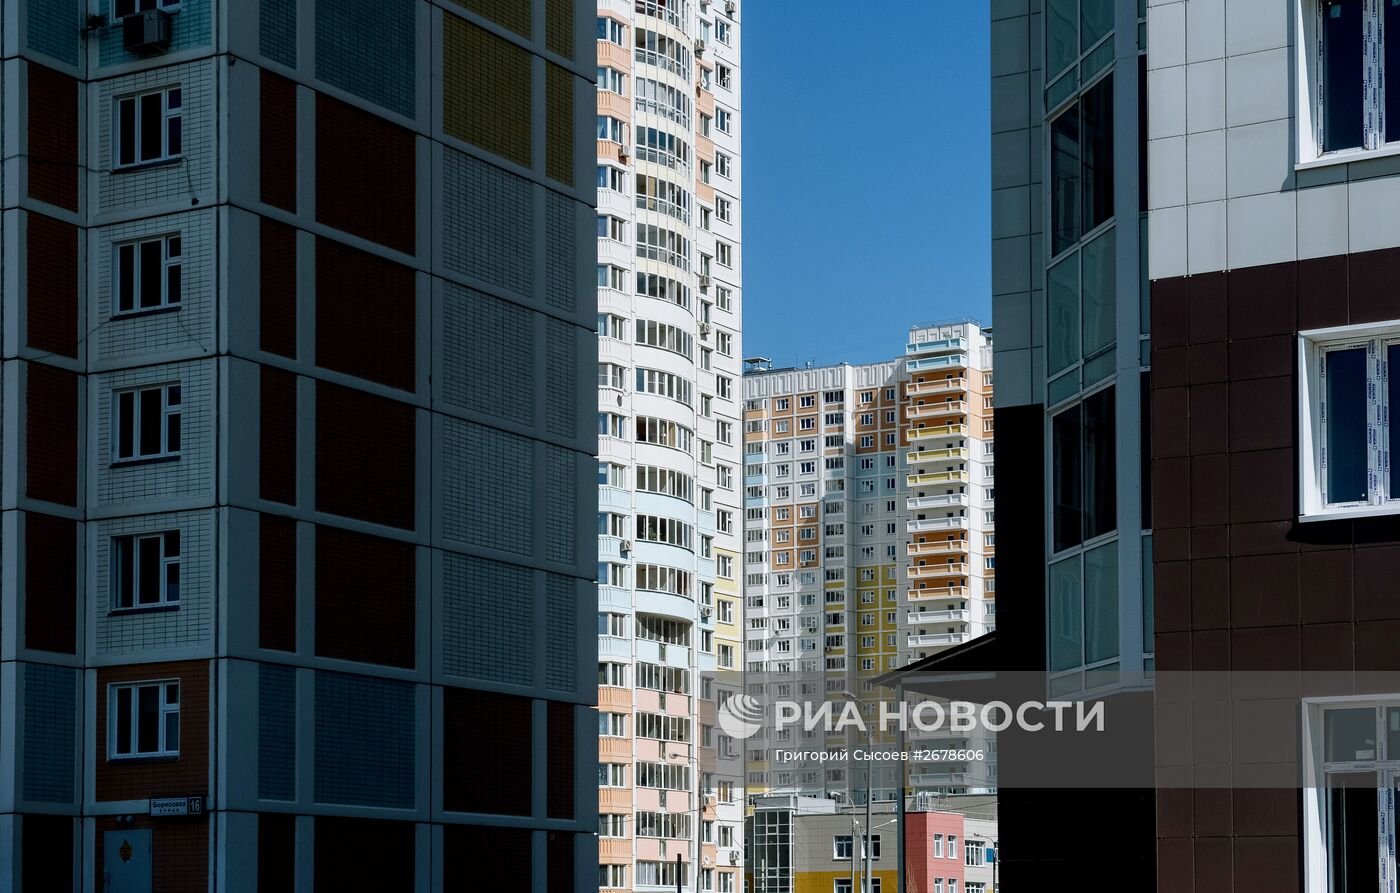 Строительство жилого комплекса "Ярославский" в Мытищах